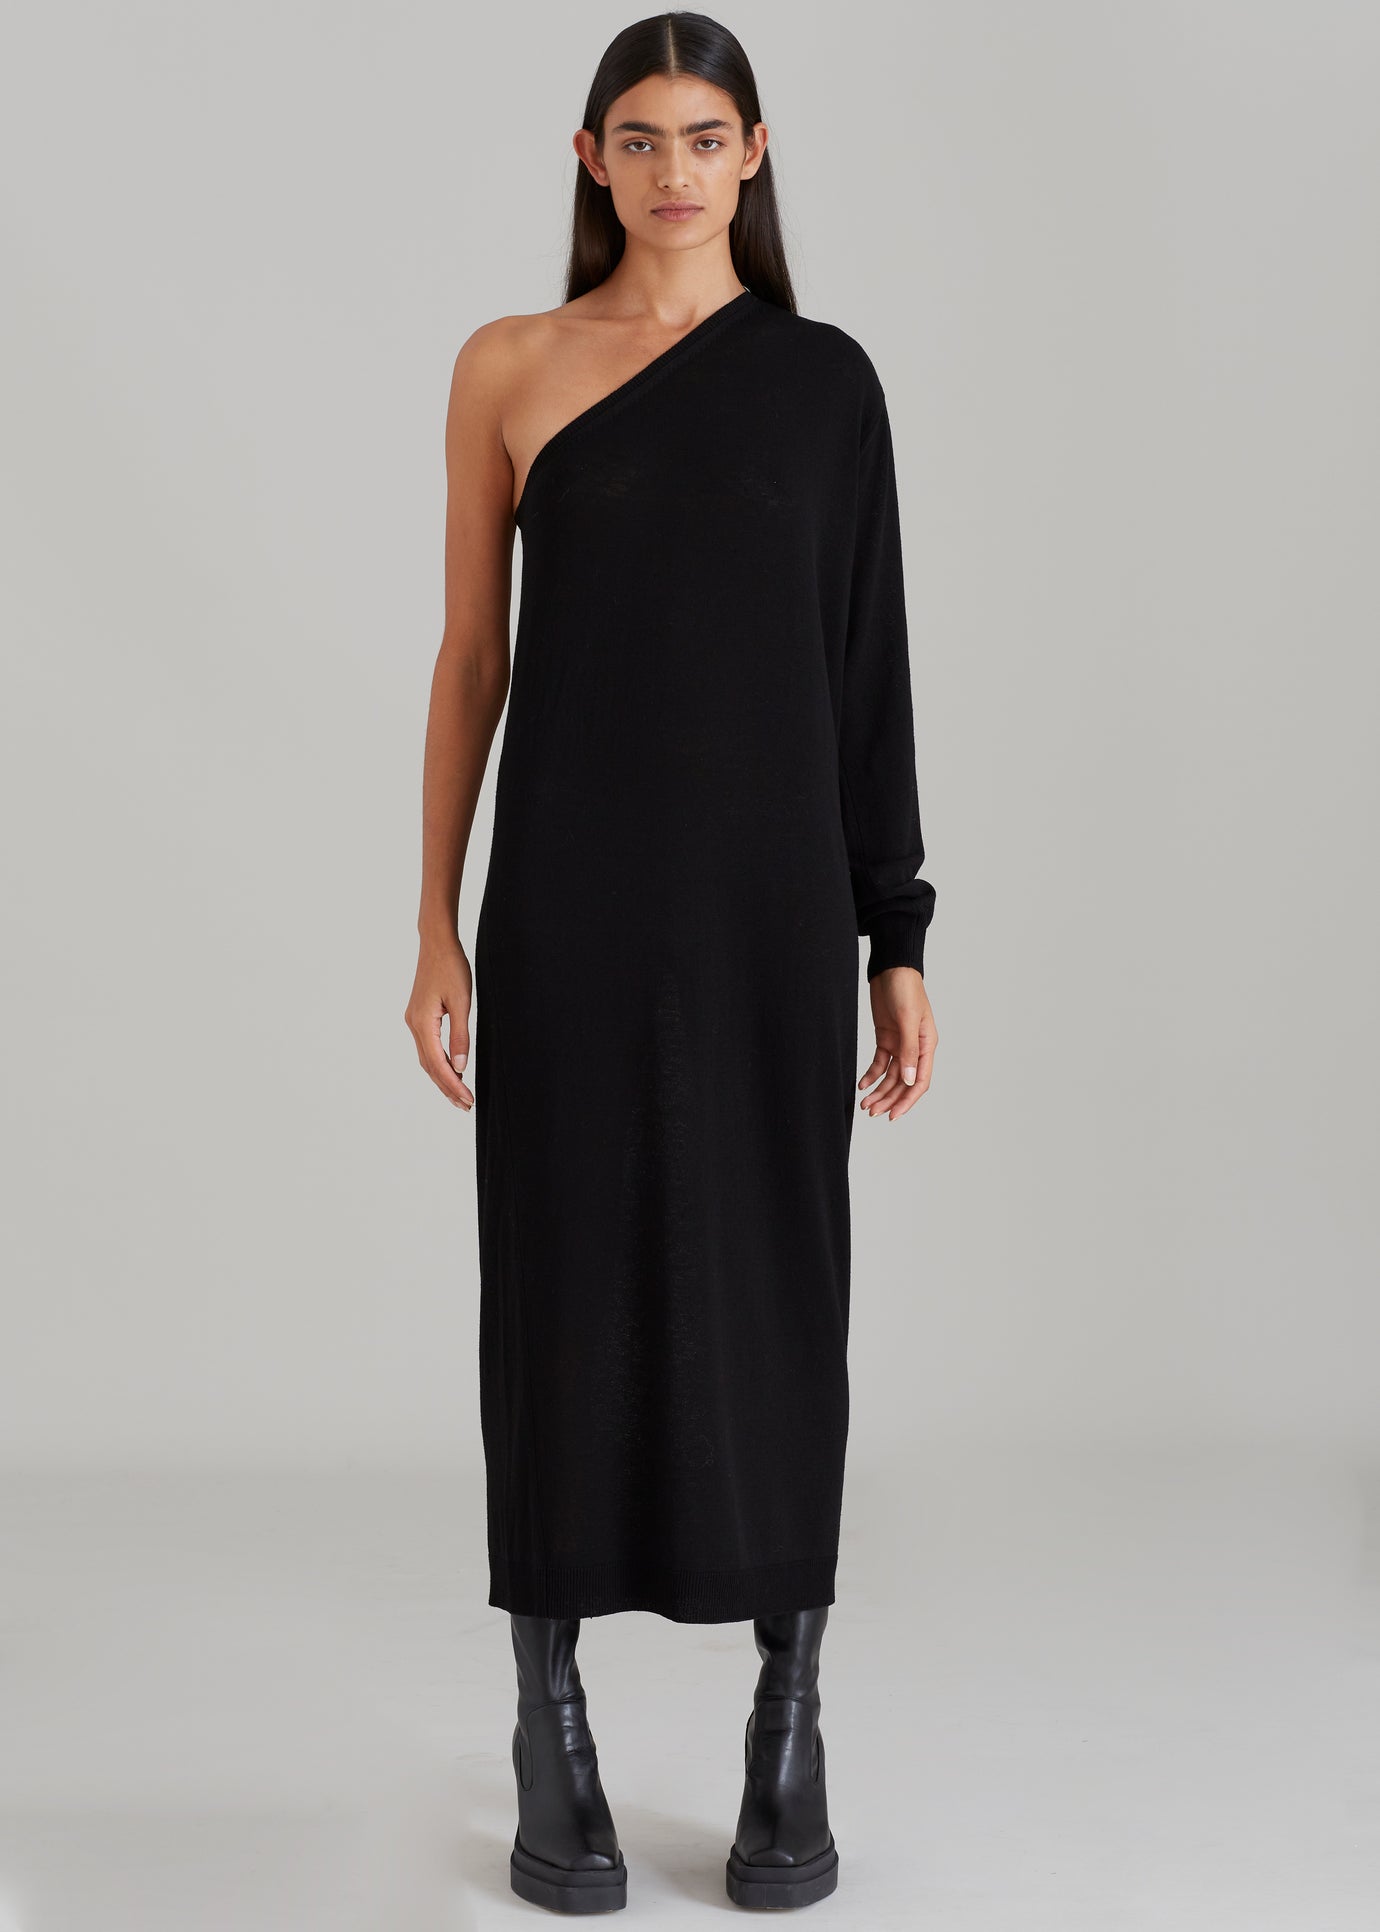 Lina One Shoulder Loose Knit Dress - Black